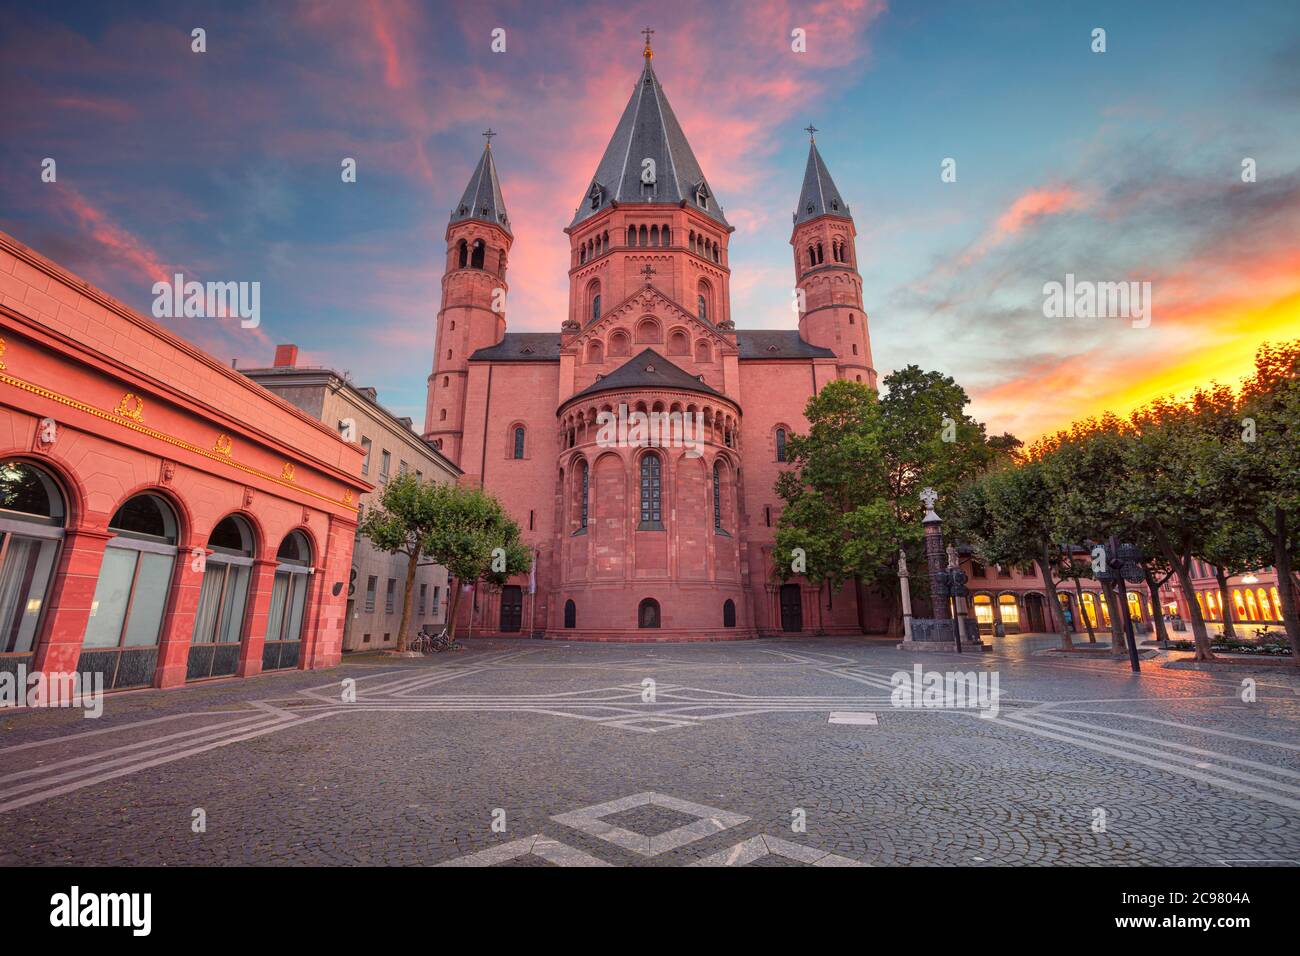 Magonza, Germania. Immagine del paesaggio urbano del centro di Magonza con la Cattedrale di Magonza durante il bellissimo tramonto. Foto Stock